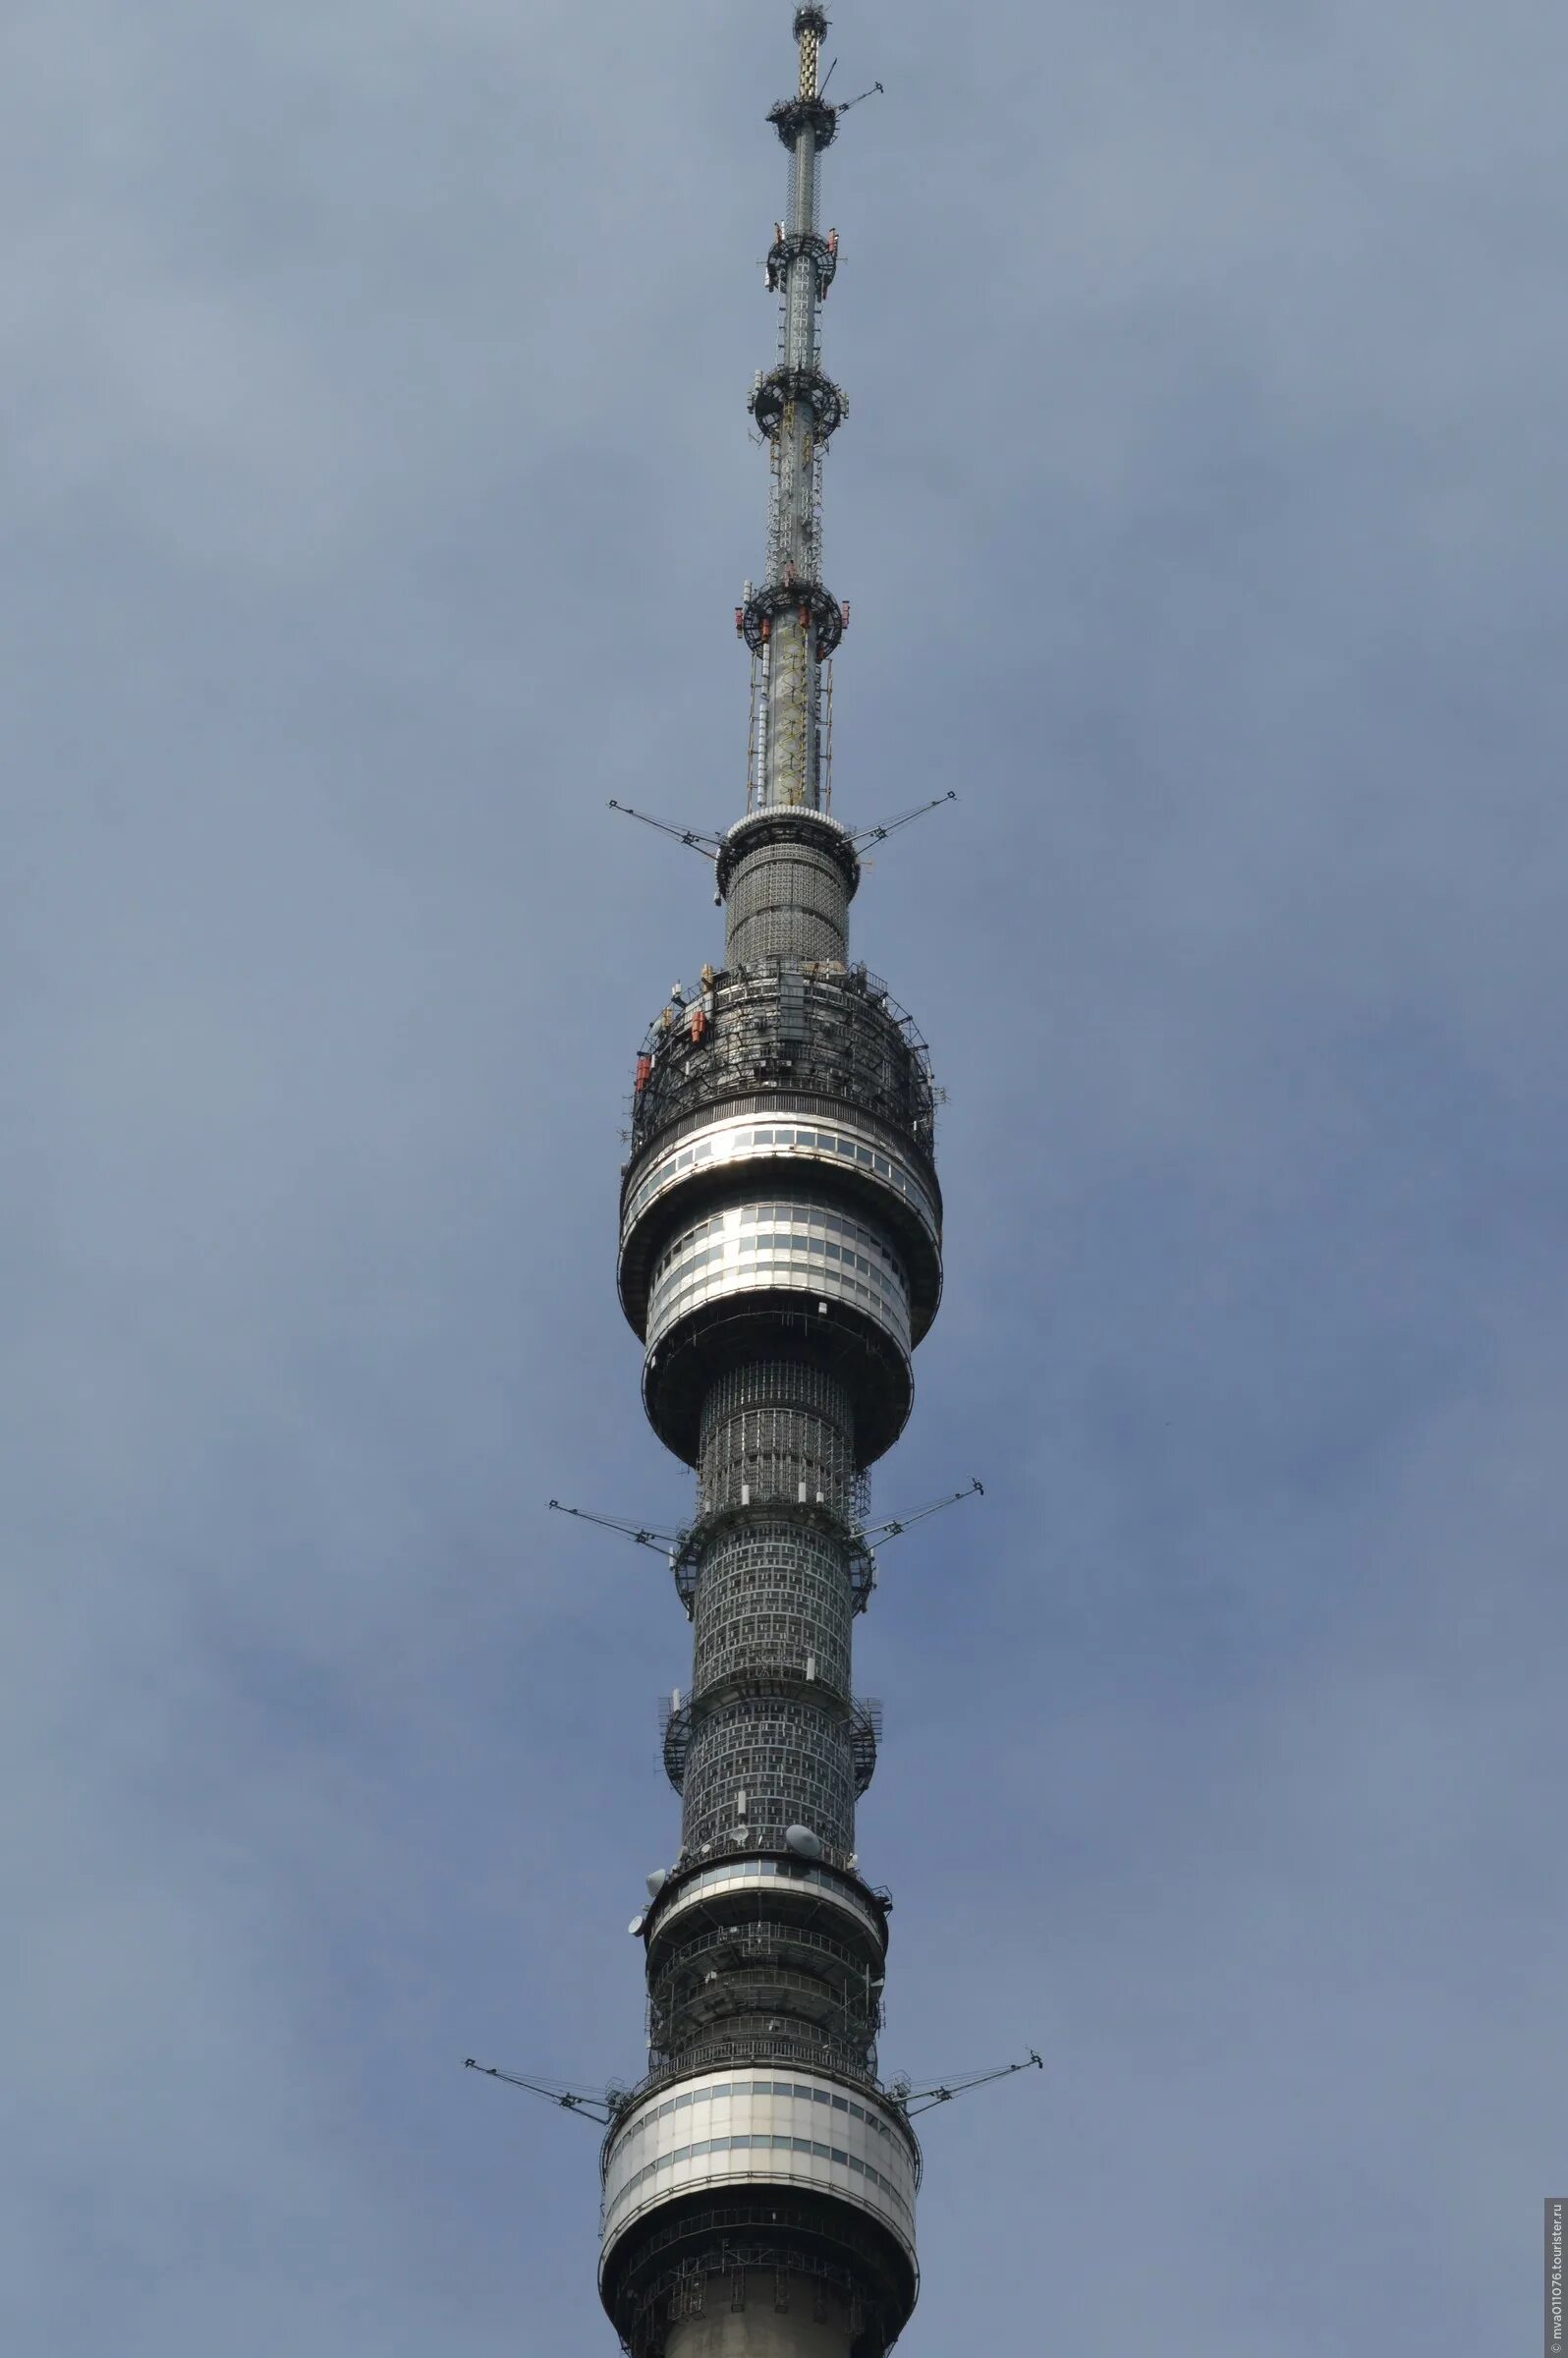 Останкинская башня высота. Телебашня Останкино смотровая. Останкинская телебашня высота 337 метров. Останкинская телебашня высота 560 метров. Высота Останкинской башни в метрах в Москве.